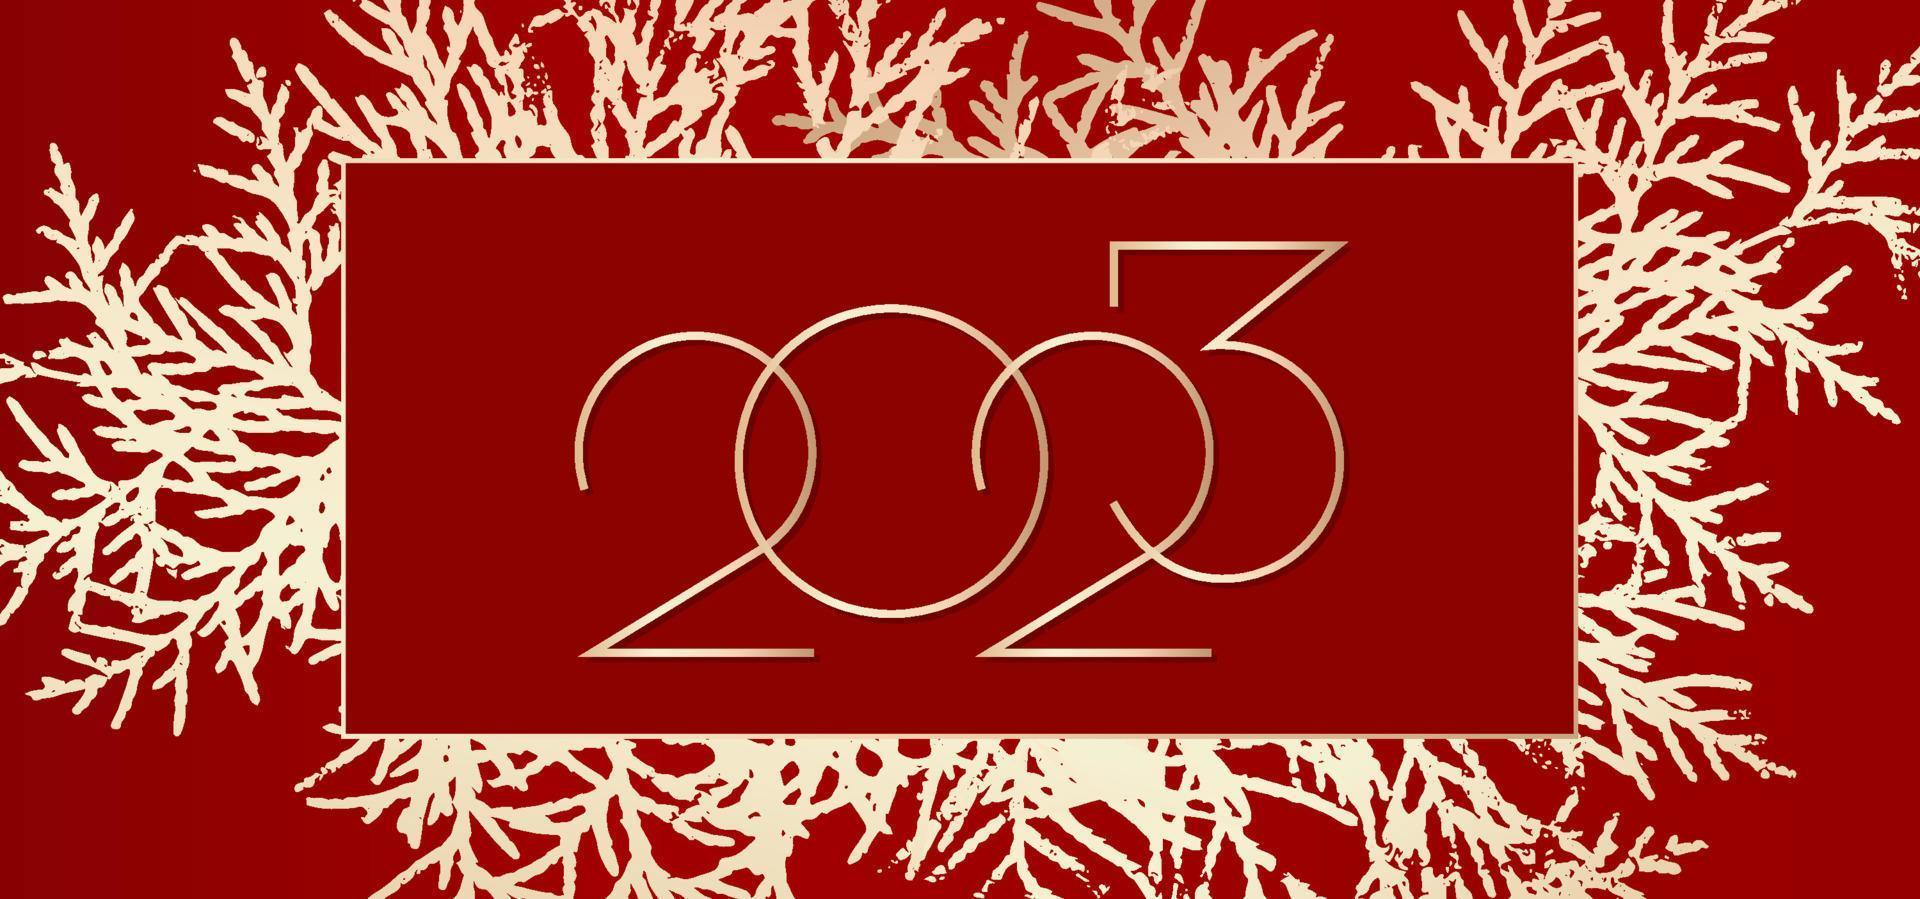 Diseño de fondo de feliz año nuevo 2023. fondo rojo con árbol de navidad dorado. tarjeta de felicitación, pancarta, póster. ilustración vectorial vector